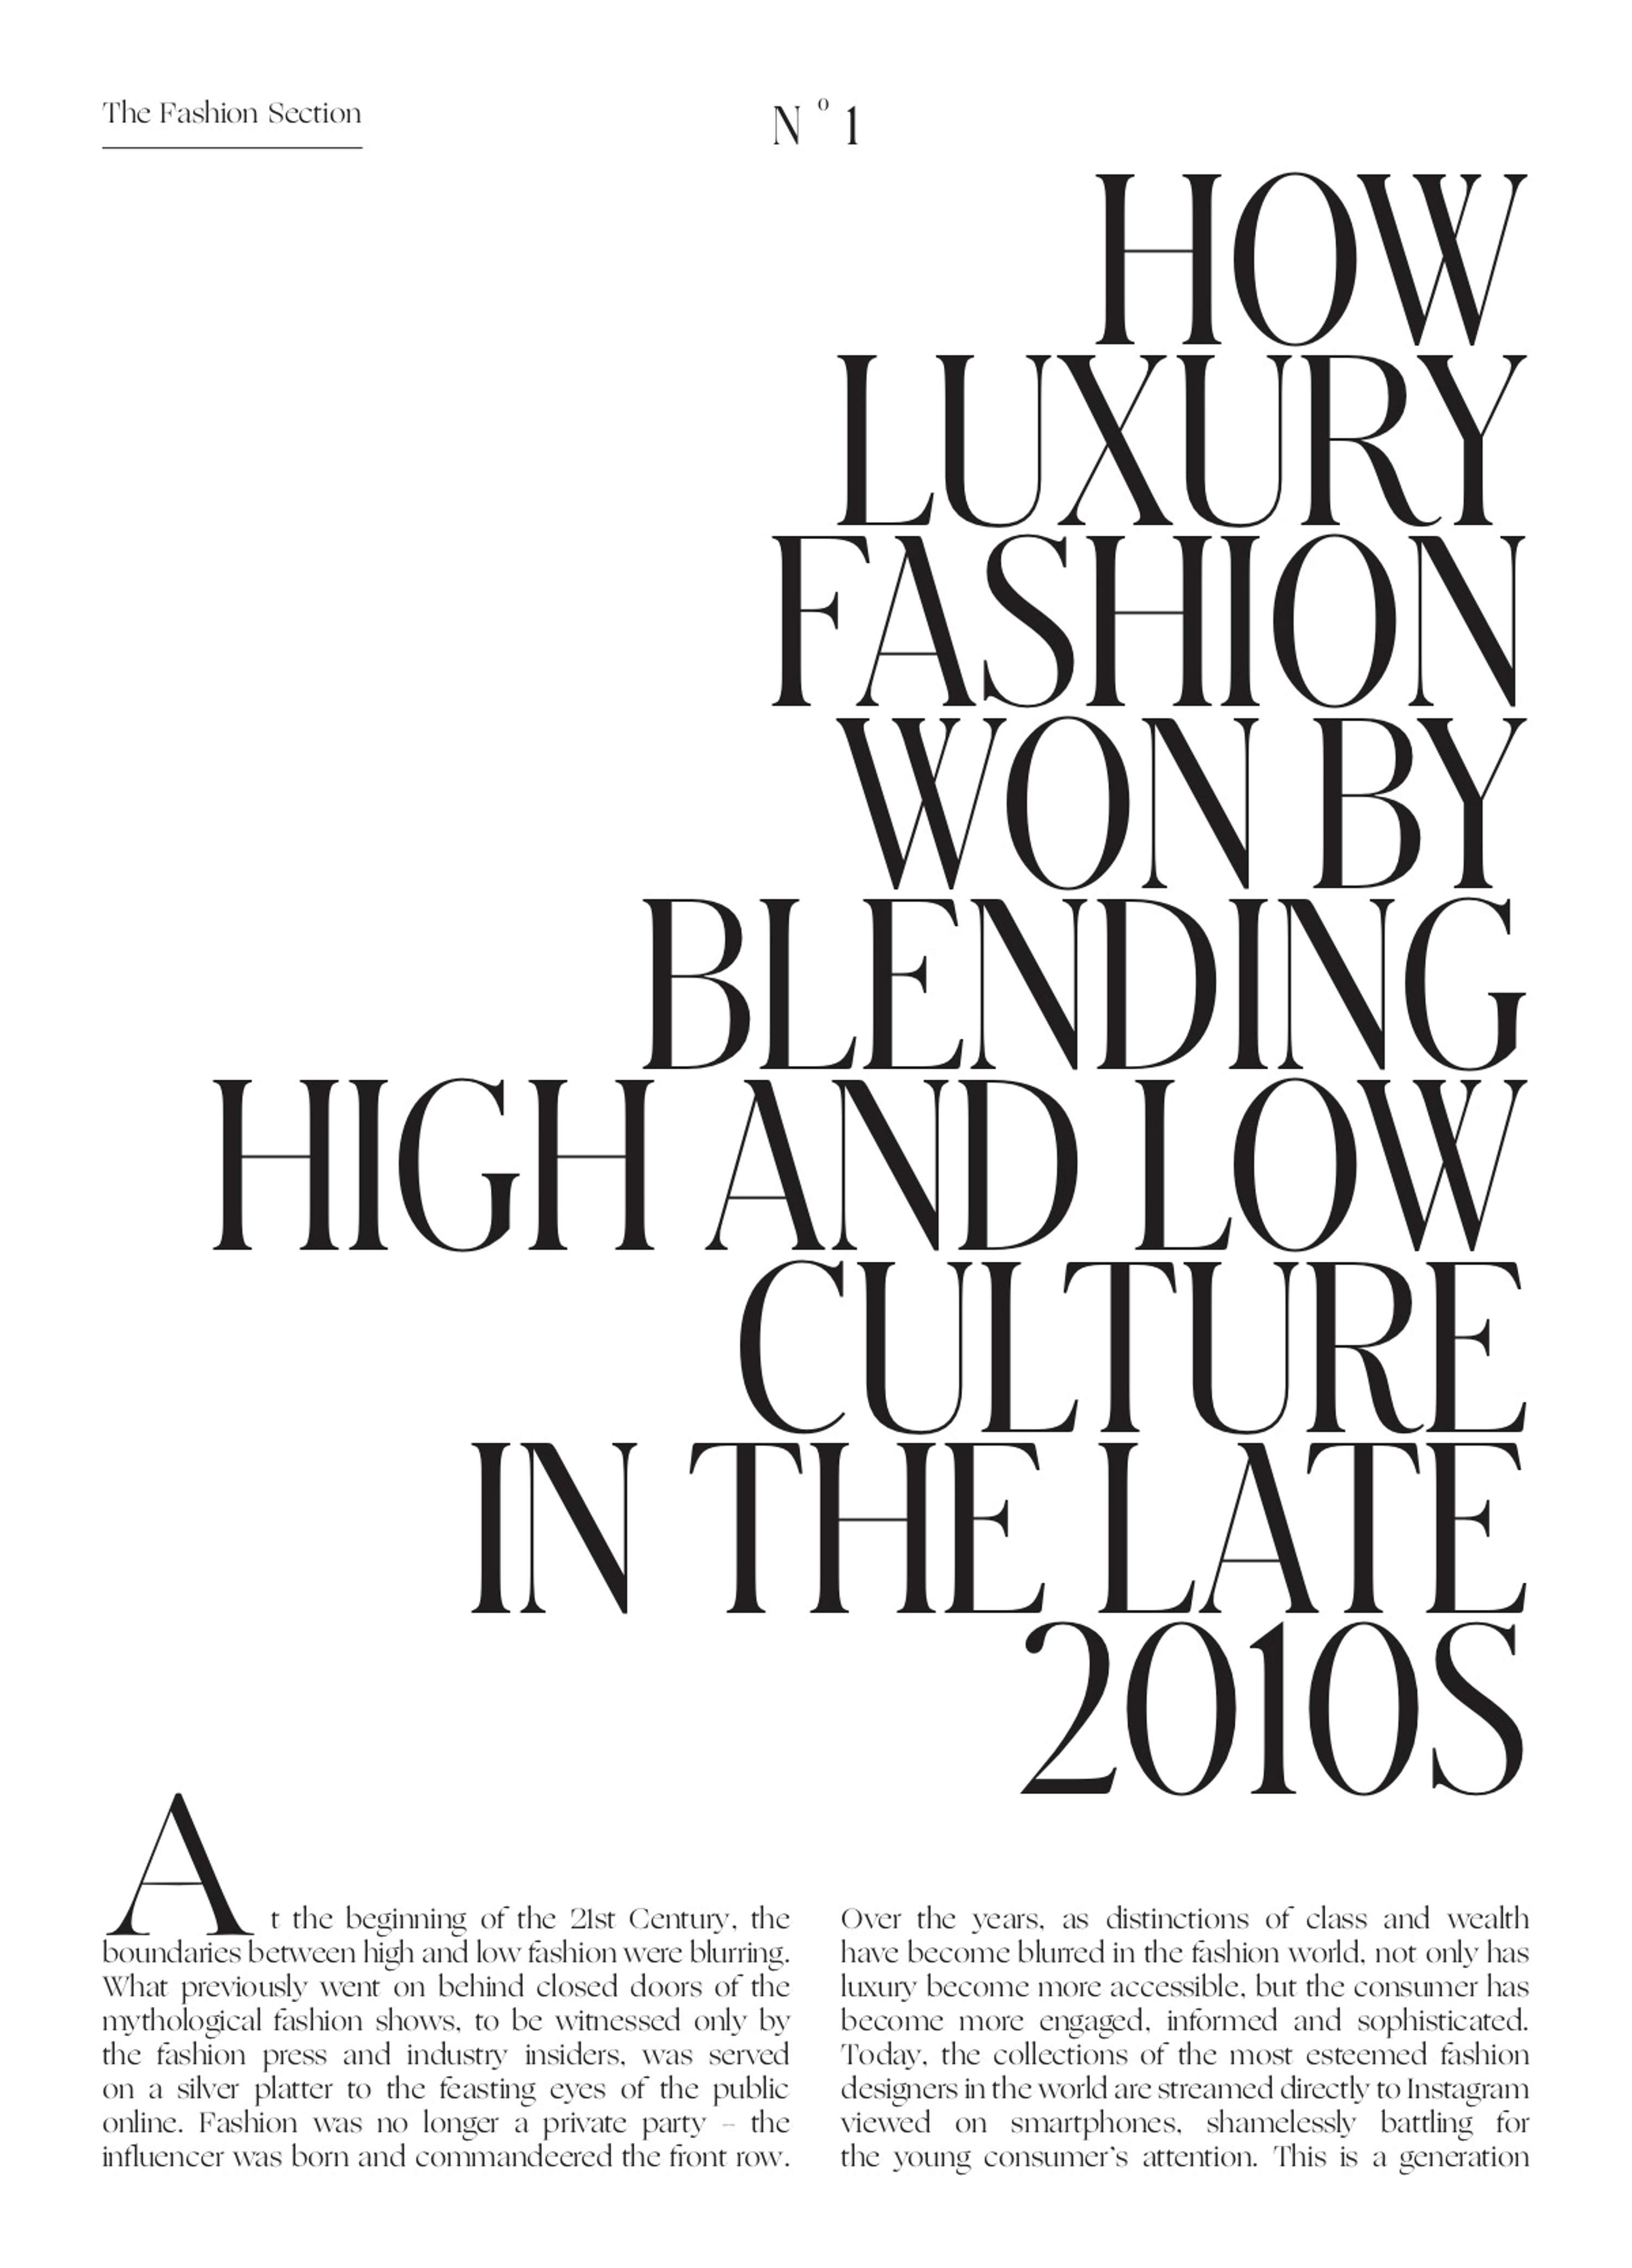 Louis Vuitton – HERO MAGAZINE: CULTURE NOW